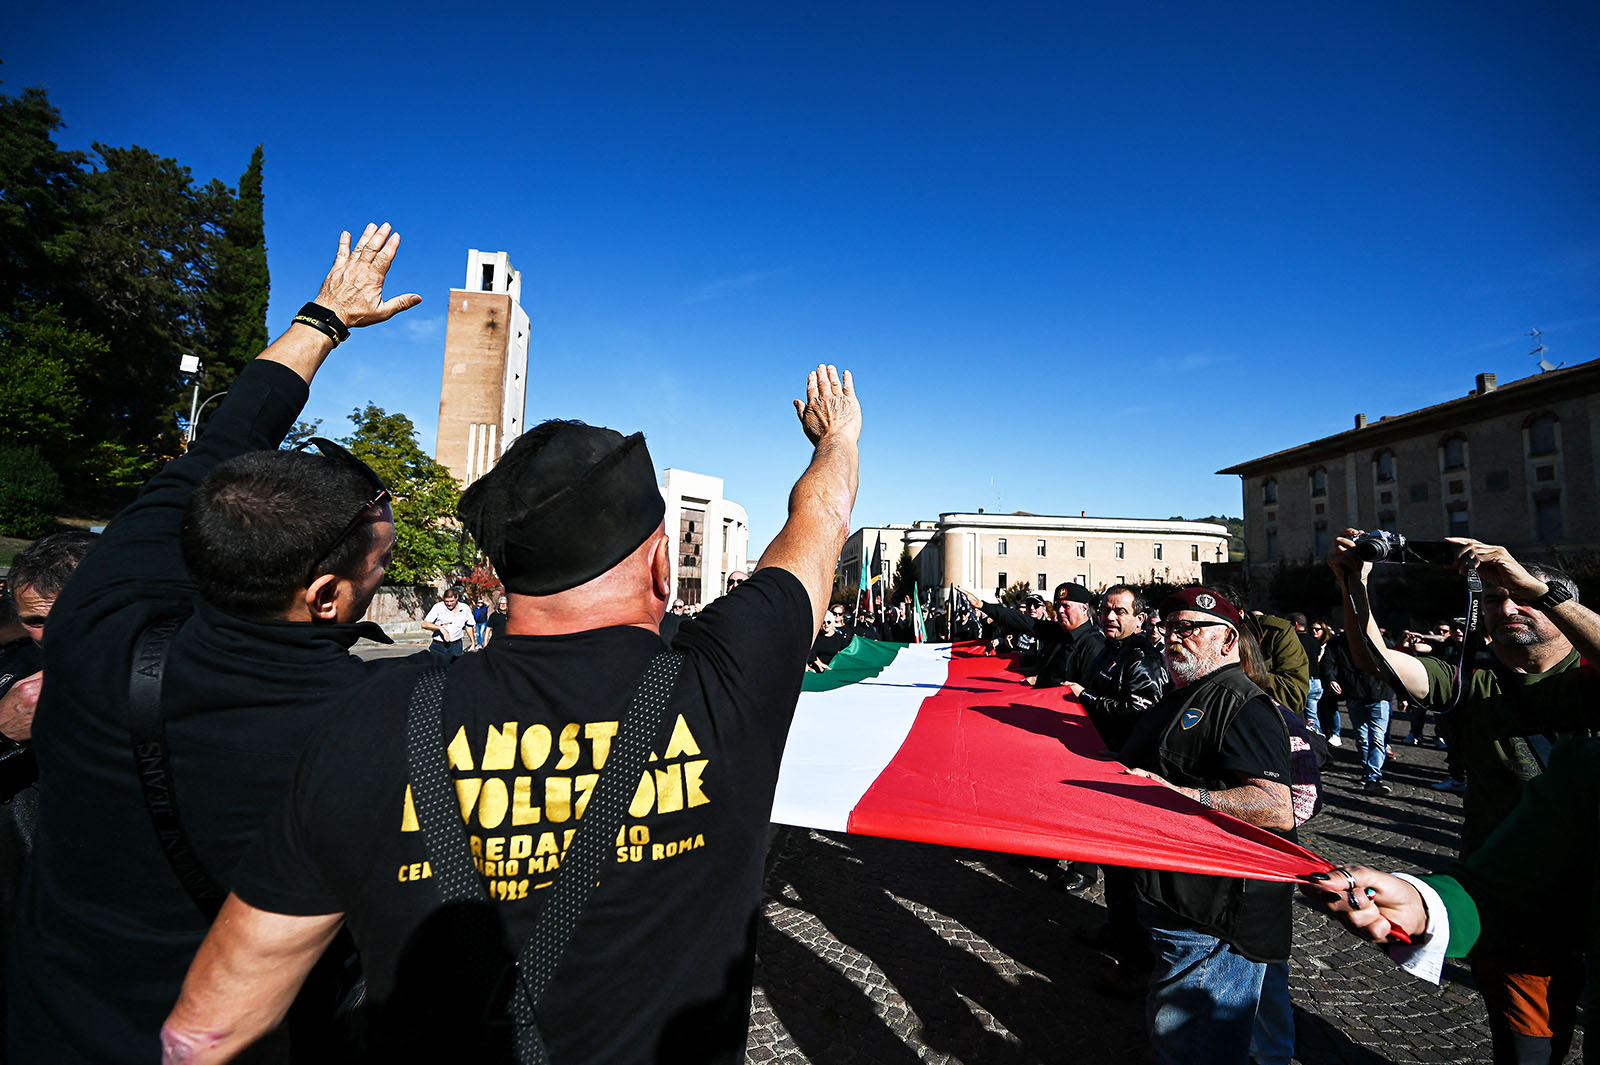 In Italia il culto fascista è considerato un reato… in alcuni casi